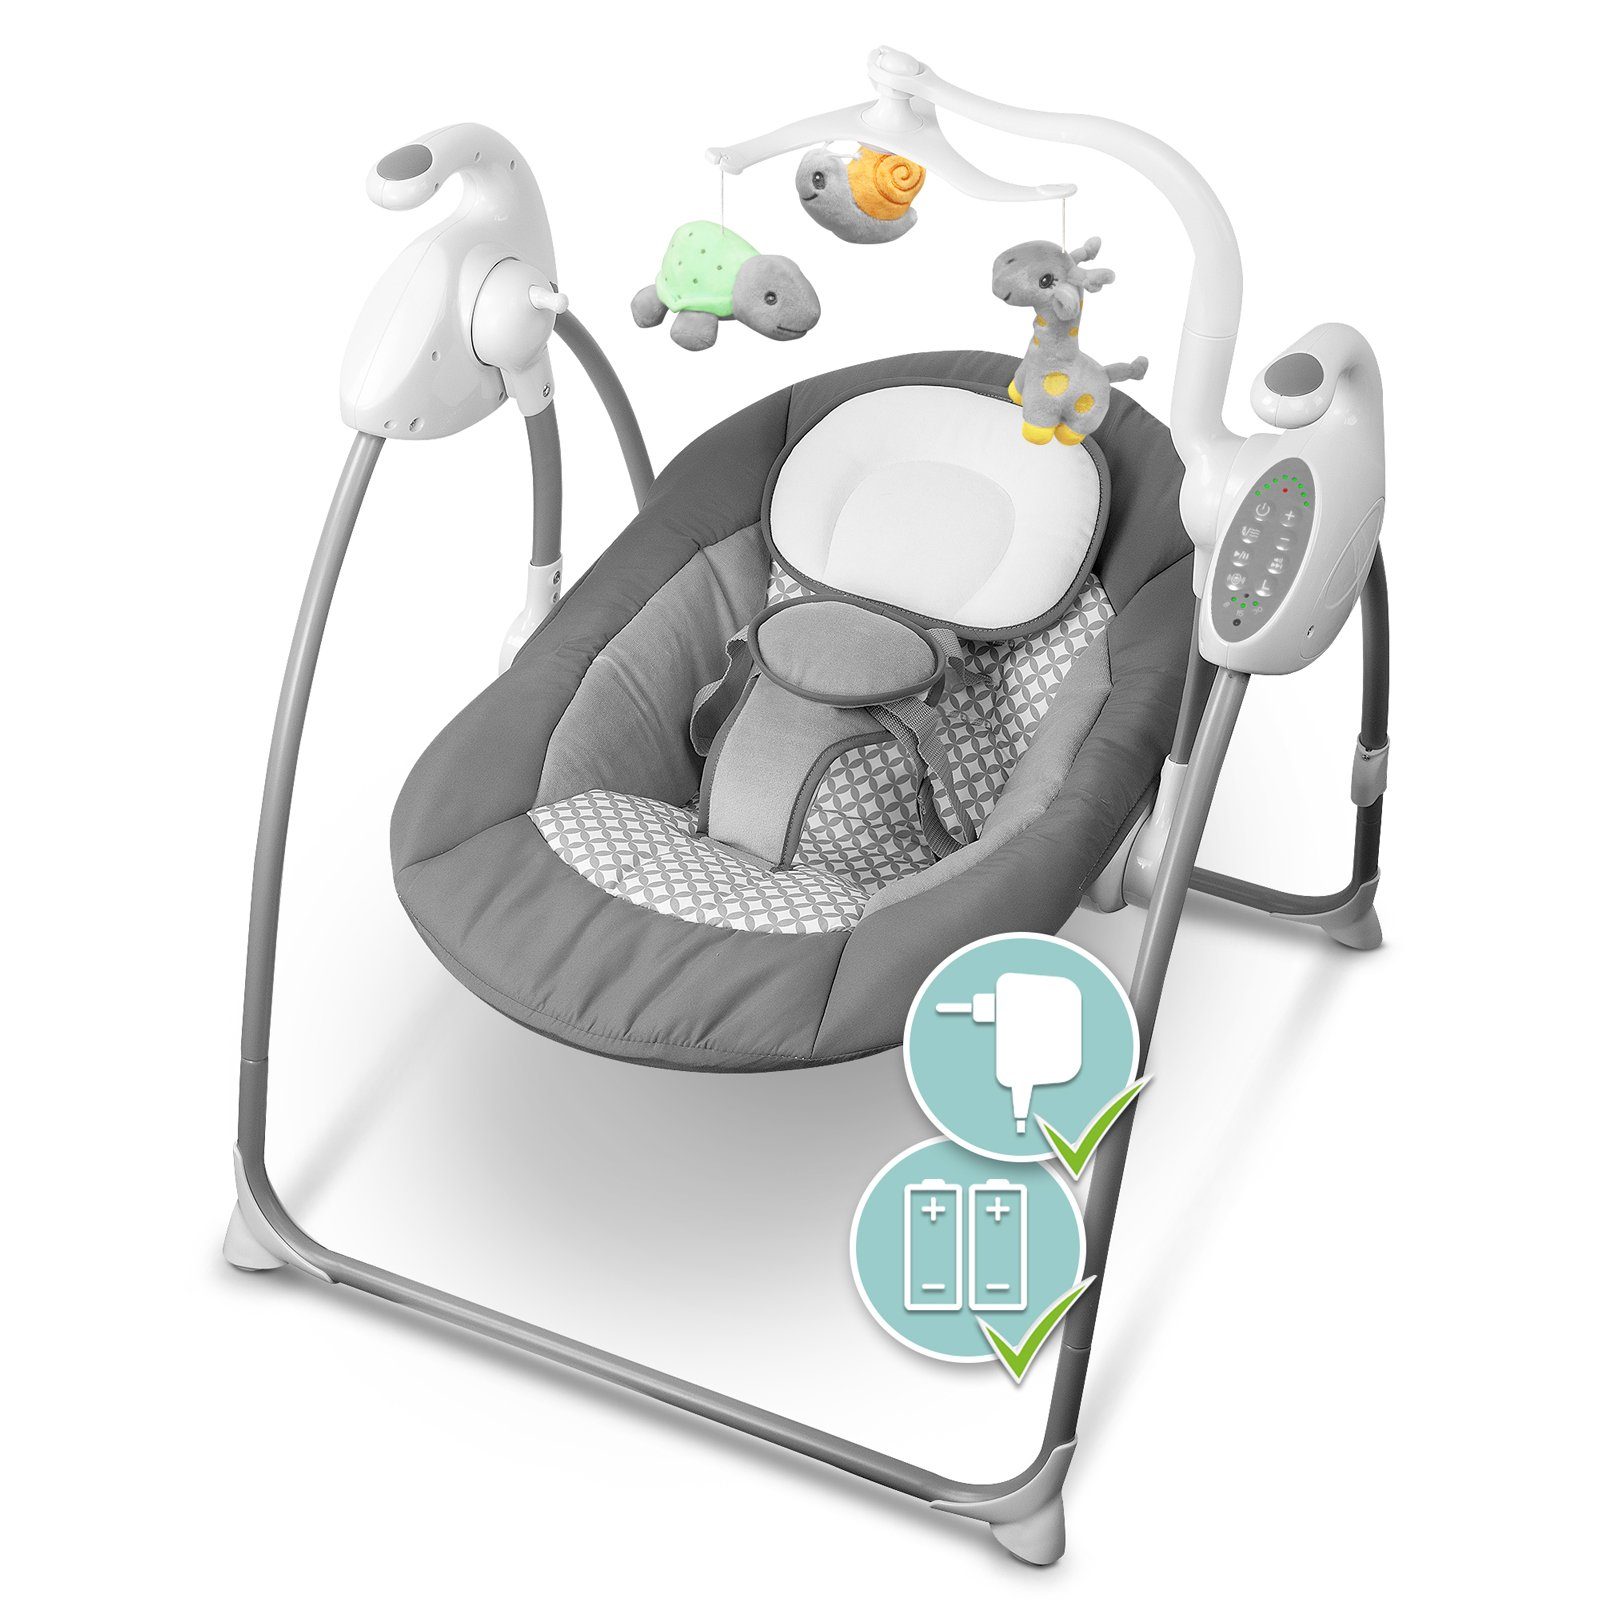 Babyschaukel mit HEIMWERT Babyschaukel und Babywippe elektrisch Fernbedienung Sound